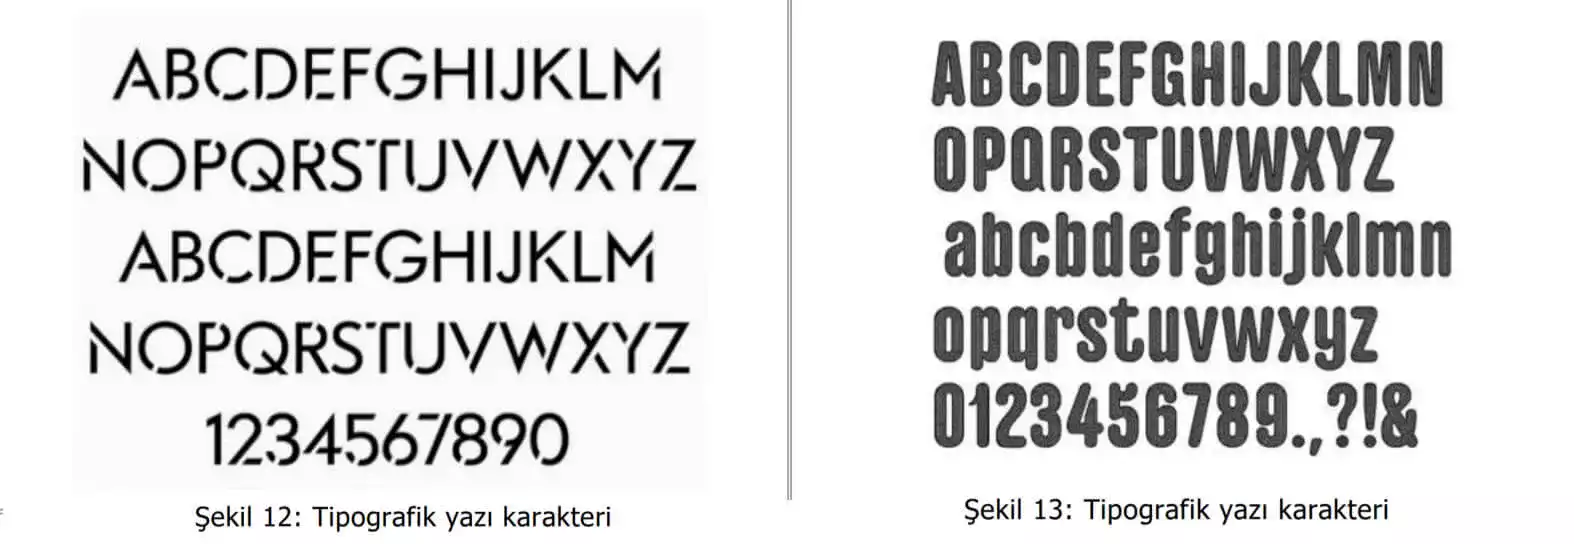 tipografik yazı karakter örnekleri-Samsun Tasarım